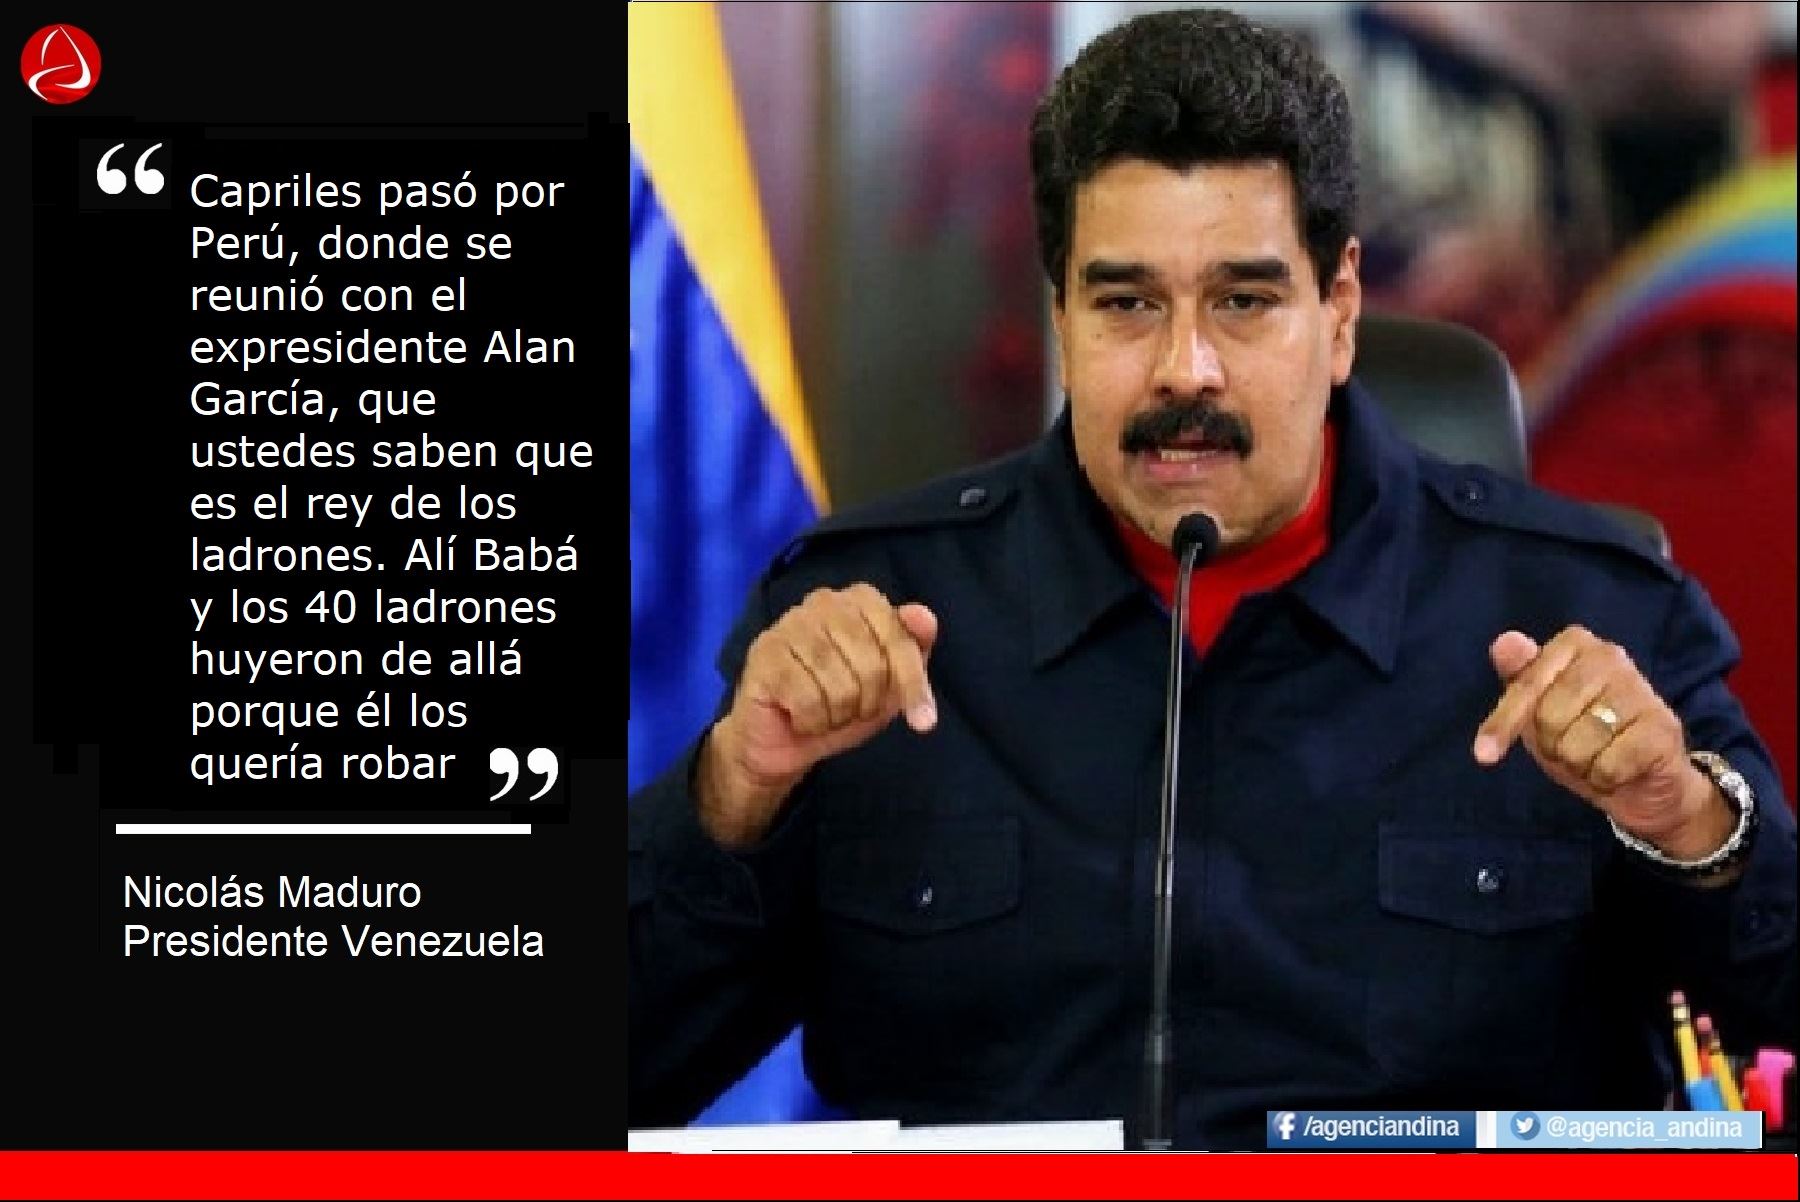 Las frases del presidente Nicolás Maduro contra los mandatarios peruanos.